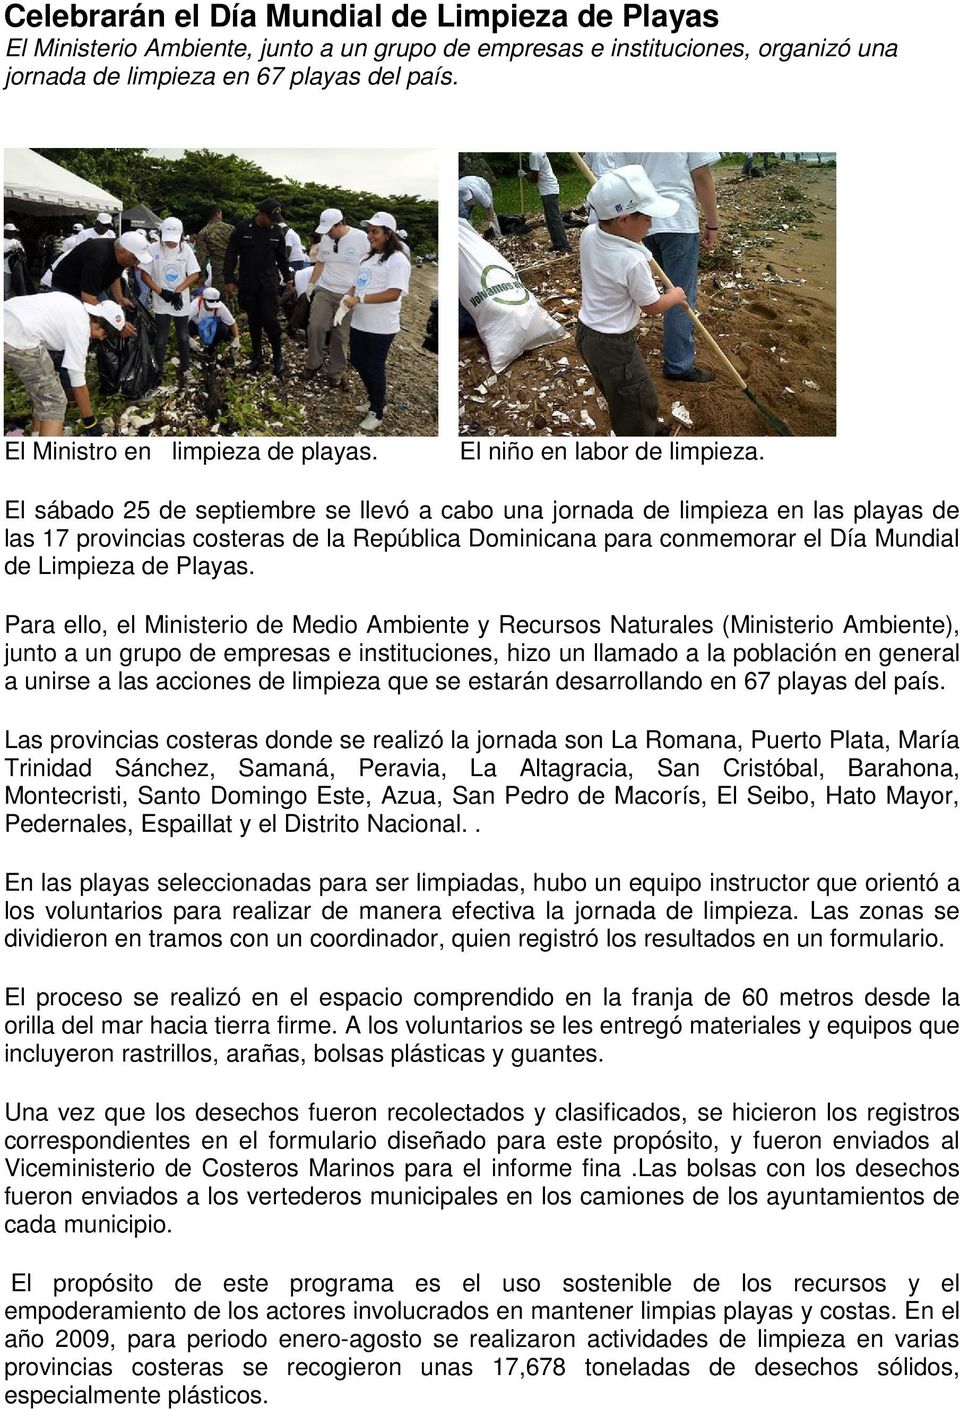 El sábado 25 de septiembre se llevó a cabo una jornada de limpieza en las playas de las 17 provincias costeras de la República Dominicana para conmemorar el Día Mundial de Limpieza de Playas.